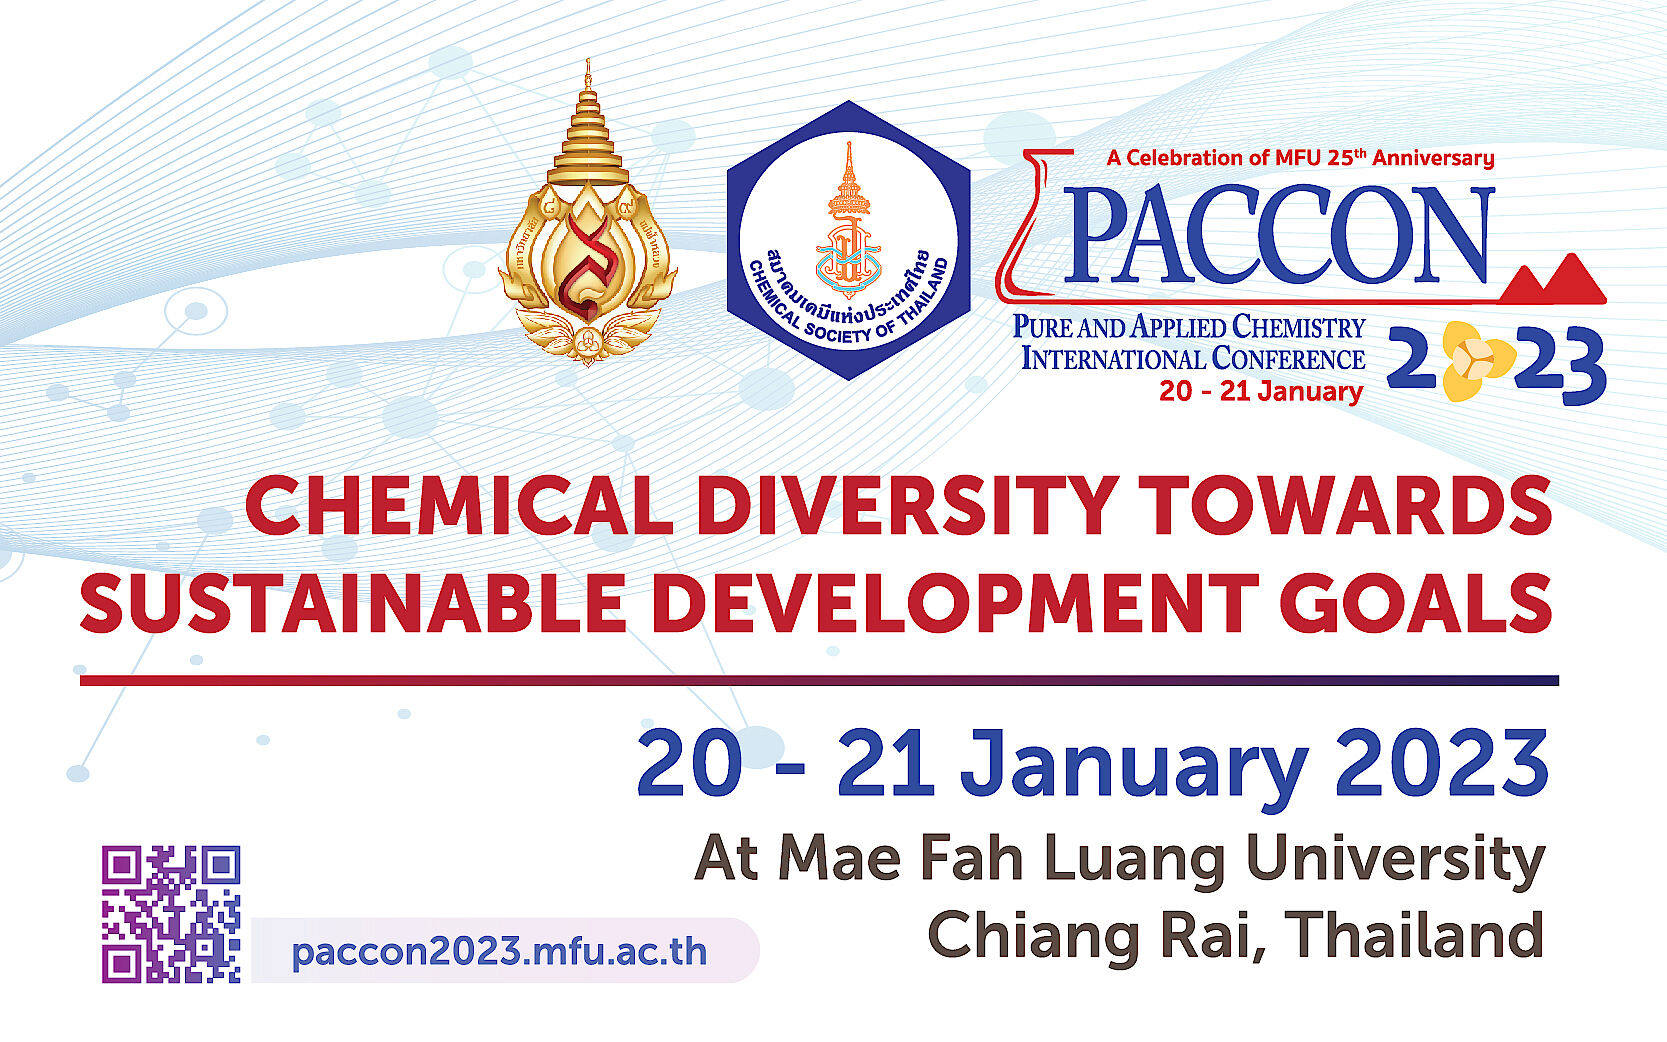 สำนักวิชาวิทยาศาสตร์ เตรียมจัดงานประชุมวิชาการนานาชาติ PACCON 2023 ภายใต้หัวข้อ “Chemical Diversity Towards Sustainable Development Goals” 